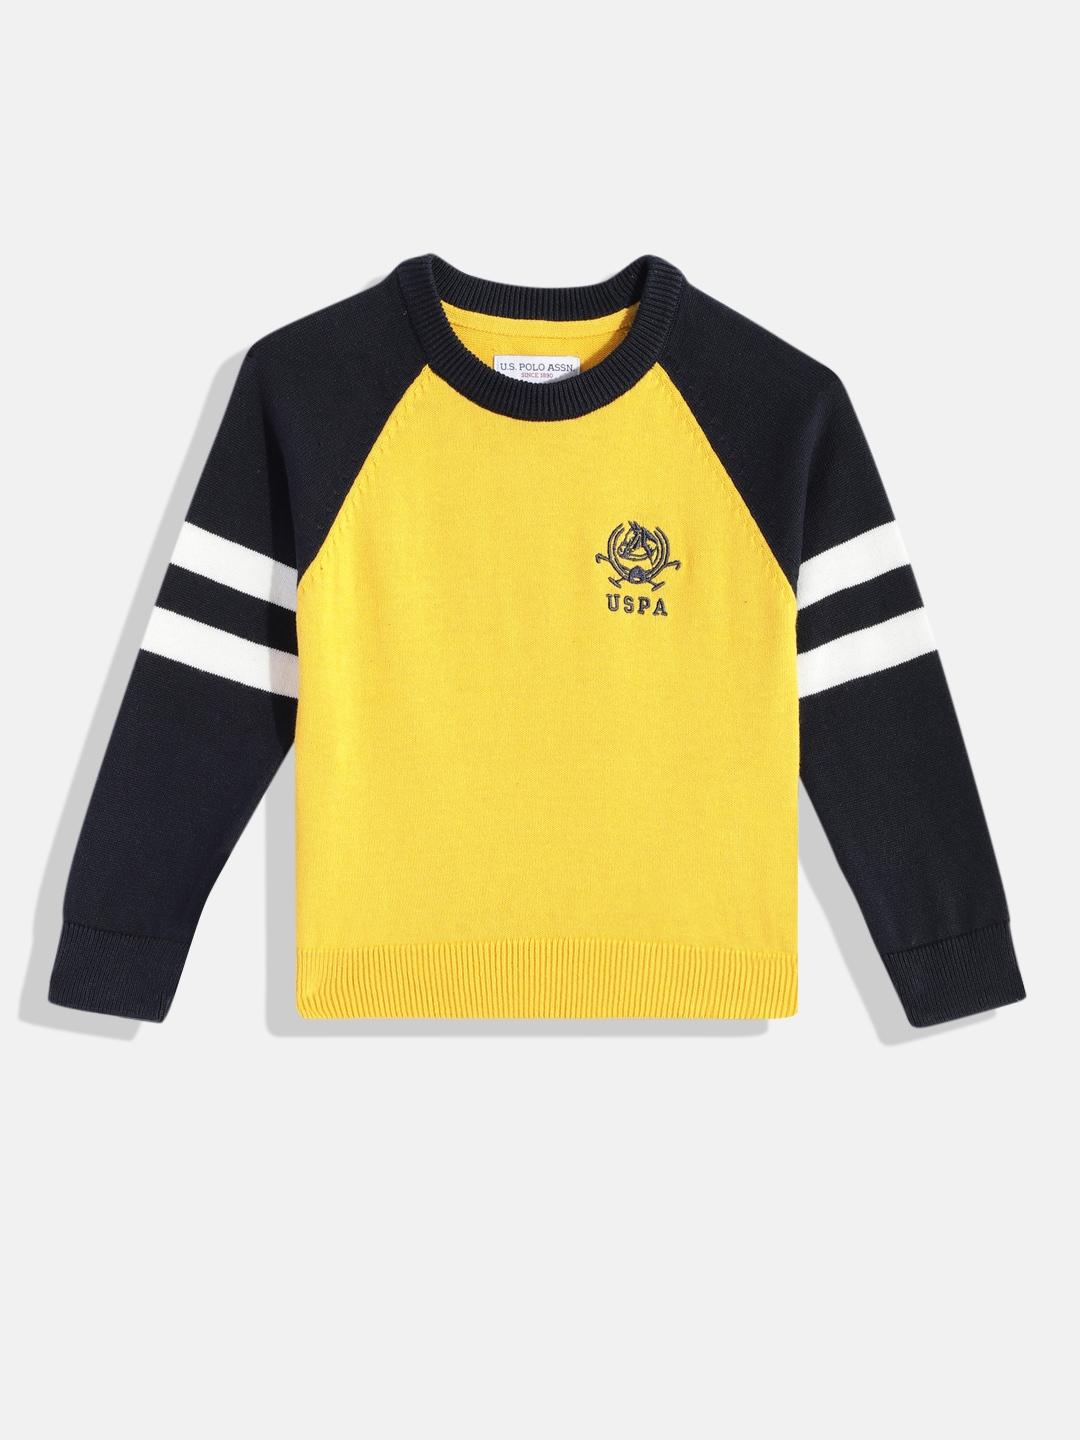 U.S. Polo Assn. Kids Boys Yellow & Navy Blue Colourblocked Pure Cotton Pullover